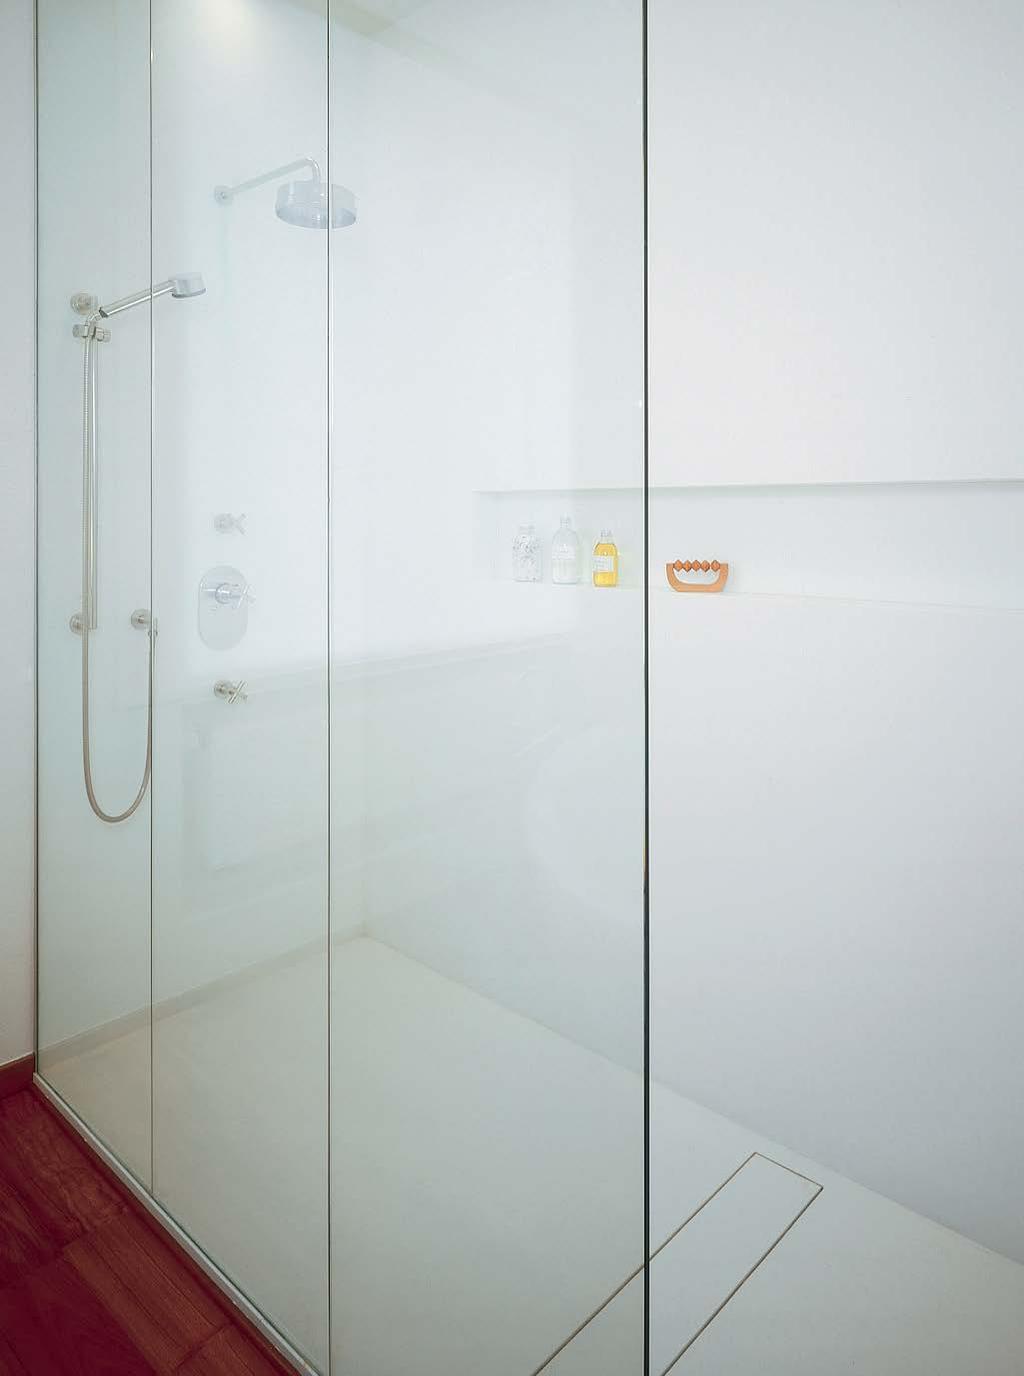 SZCZEGÓŁY POŁĄCZENIA PANELI CORIAN SHOWER WALL W NAROŻNIKU Panele Corian Shower Wall można z łatwością montować